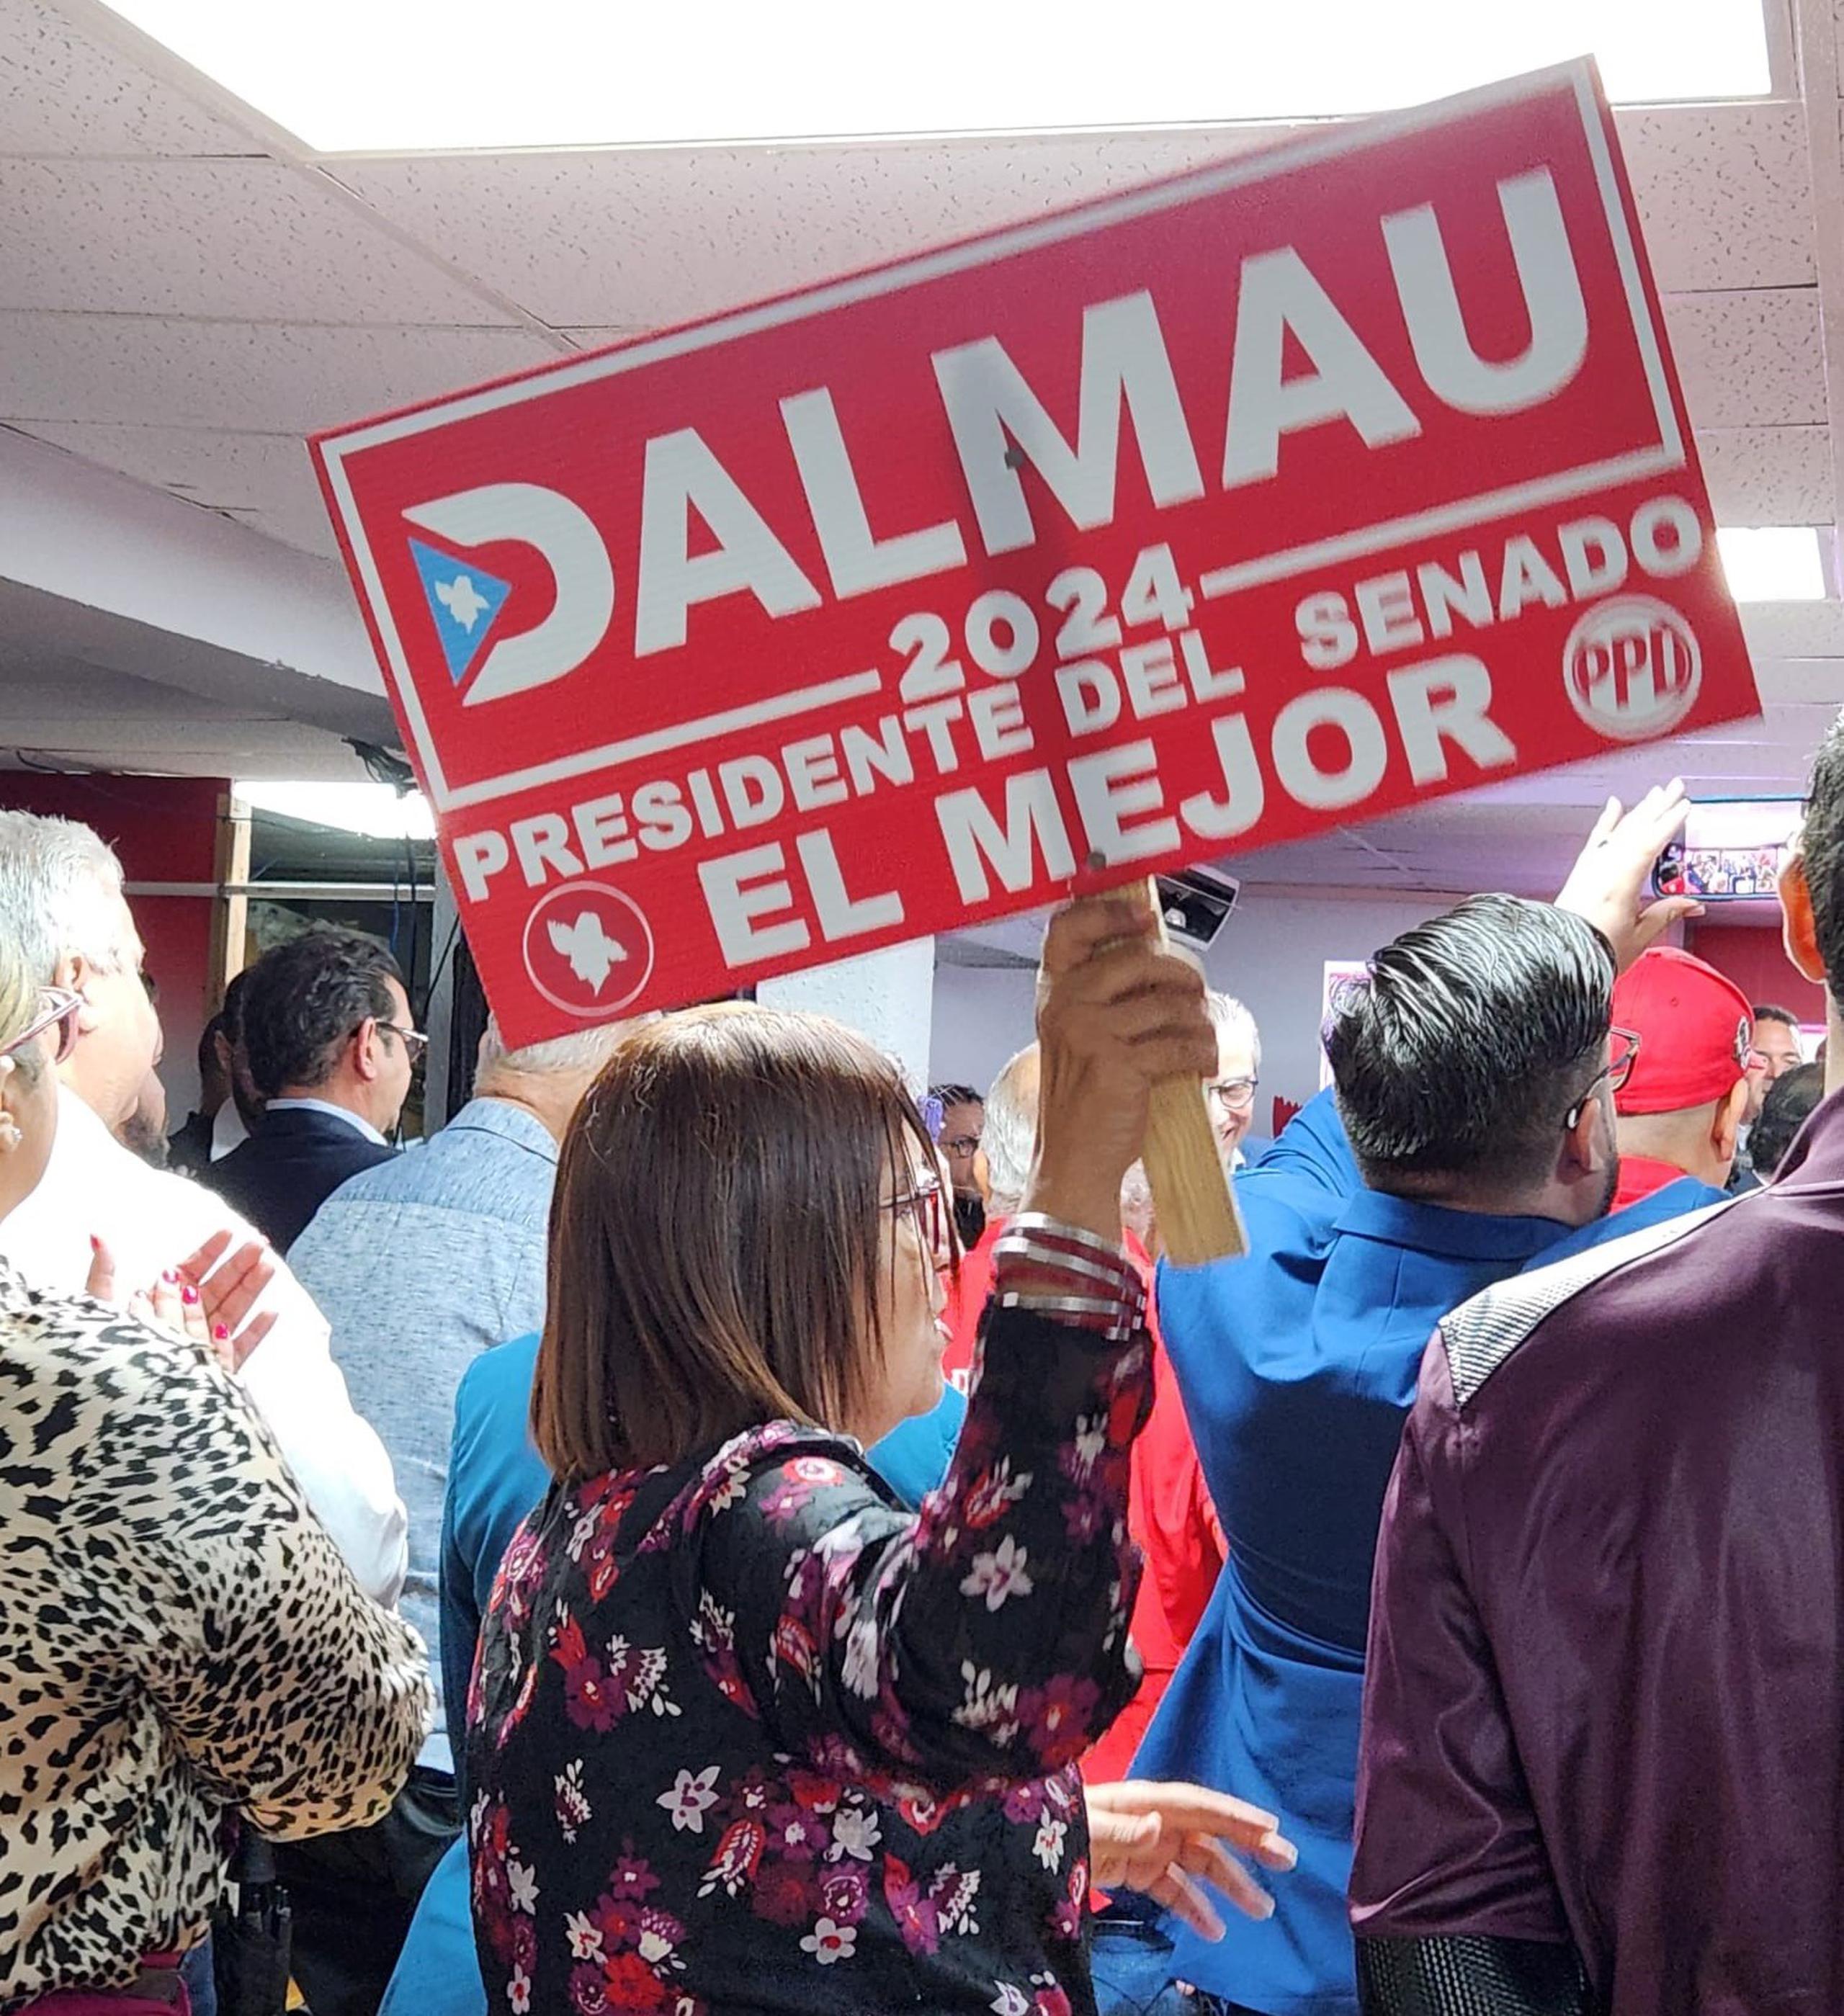 Un cartelón con un mensaje en favor de Dalmau para la presidencia al Senado.